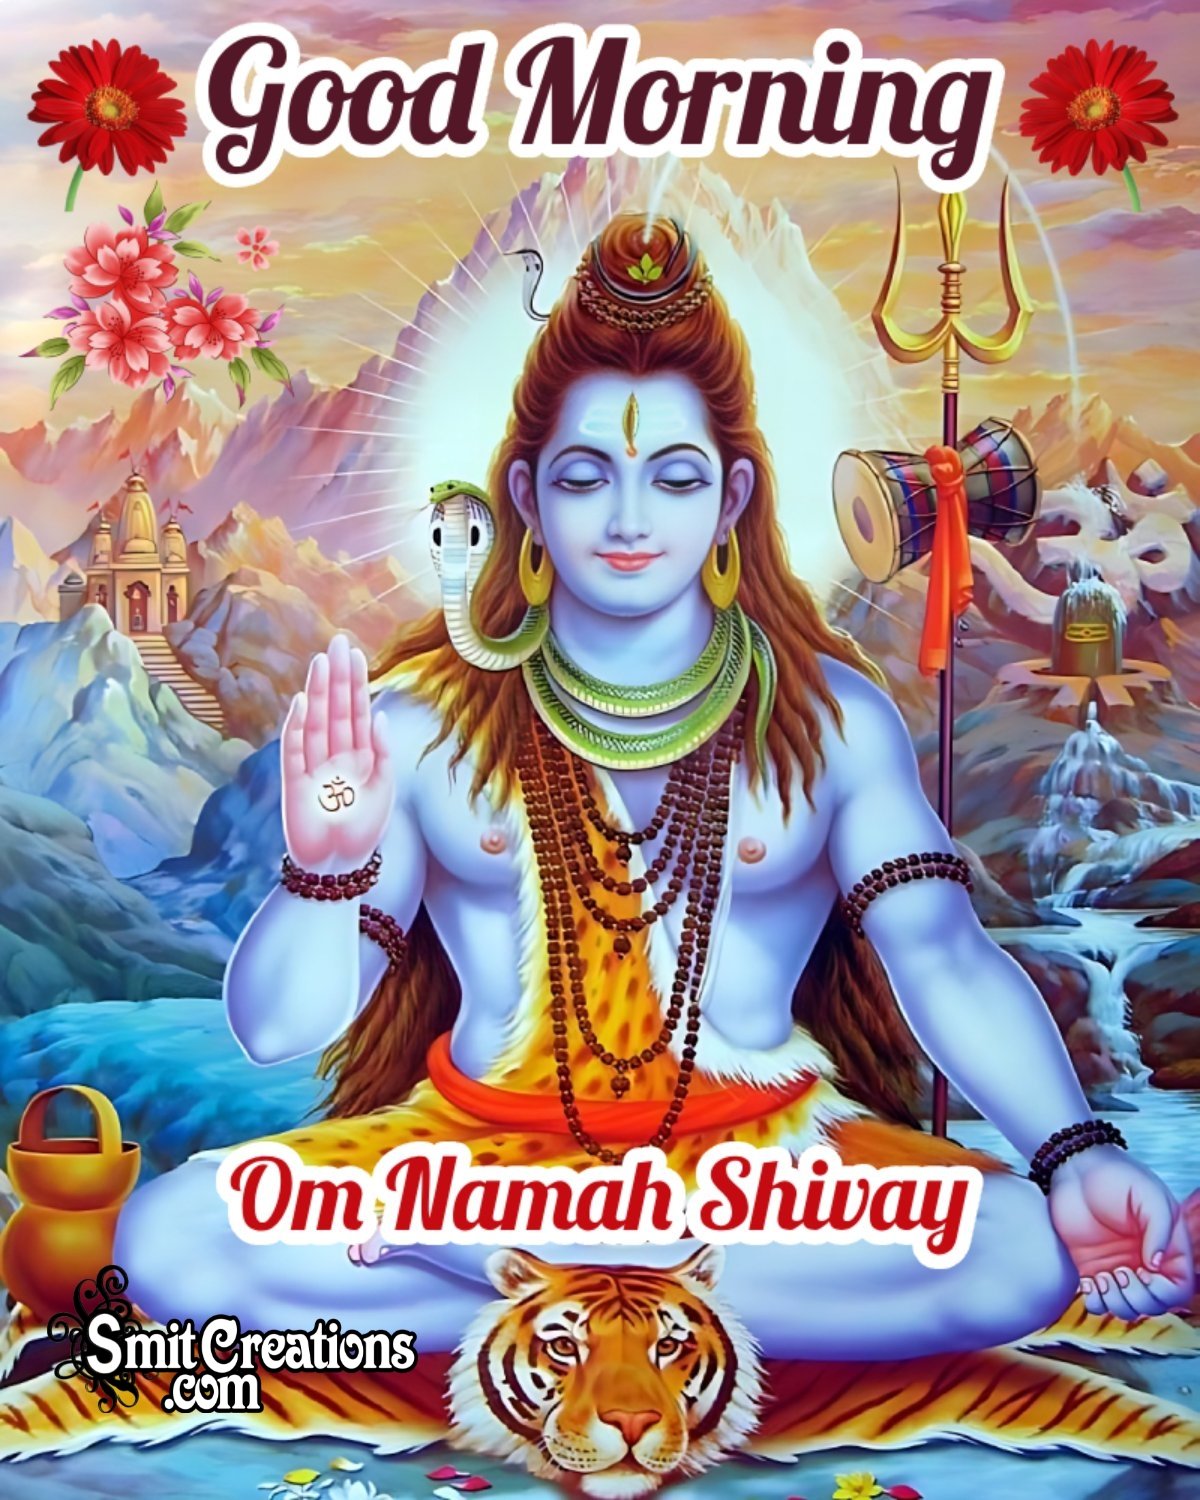 Good Morning Om Namah Shivay